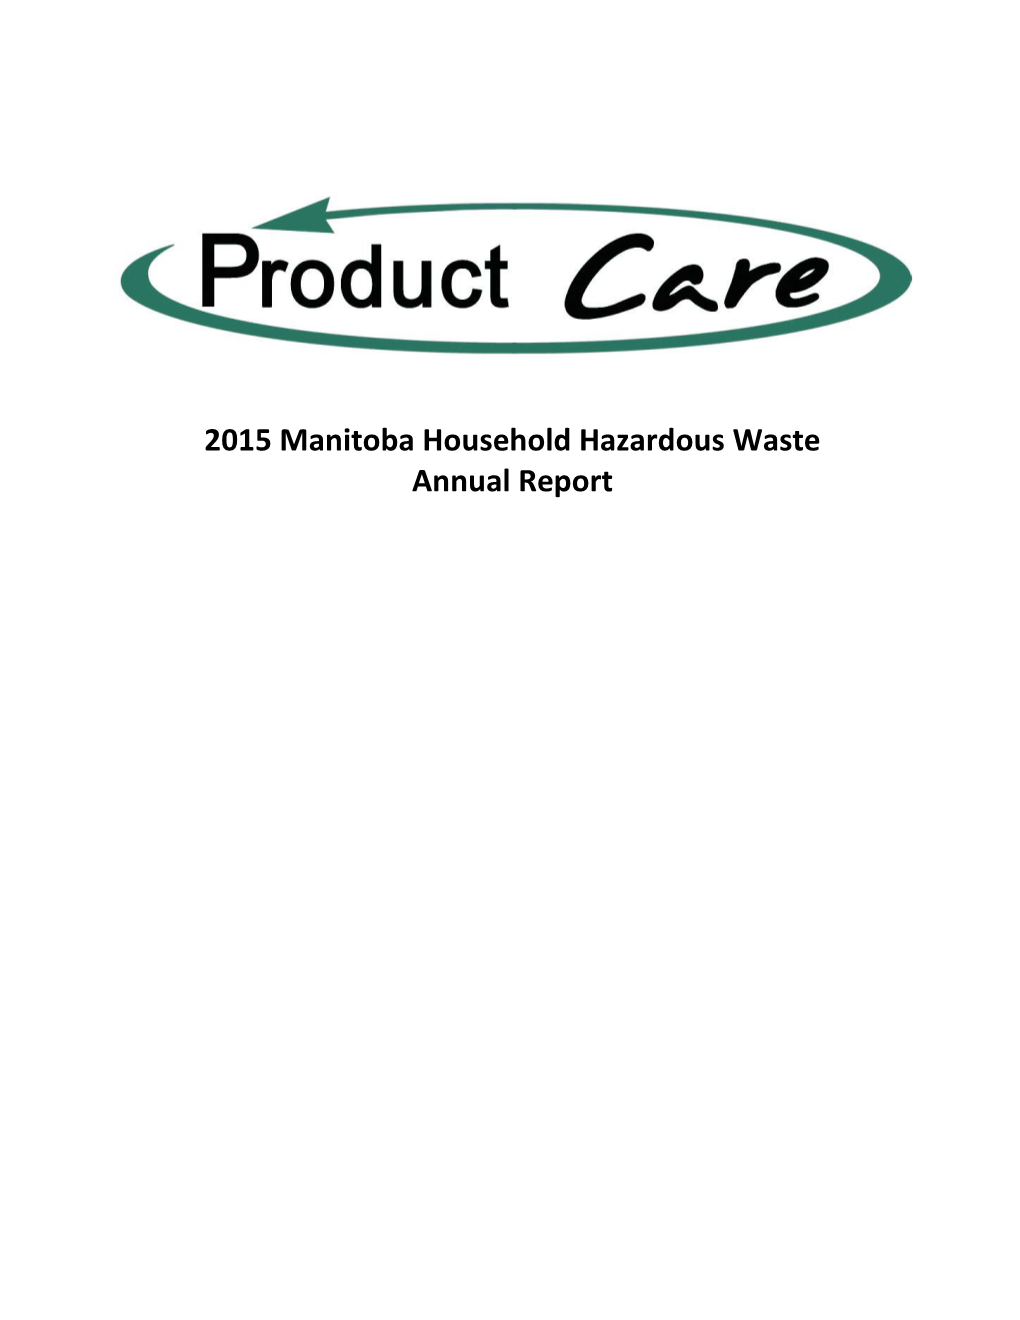 Manitoba Household Hazardous Waste Annual Report 2015